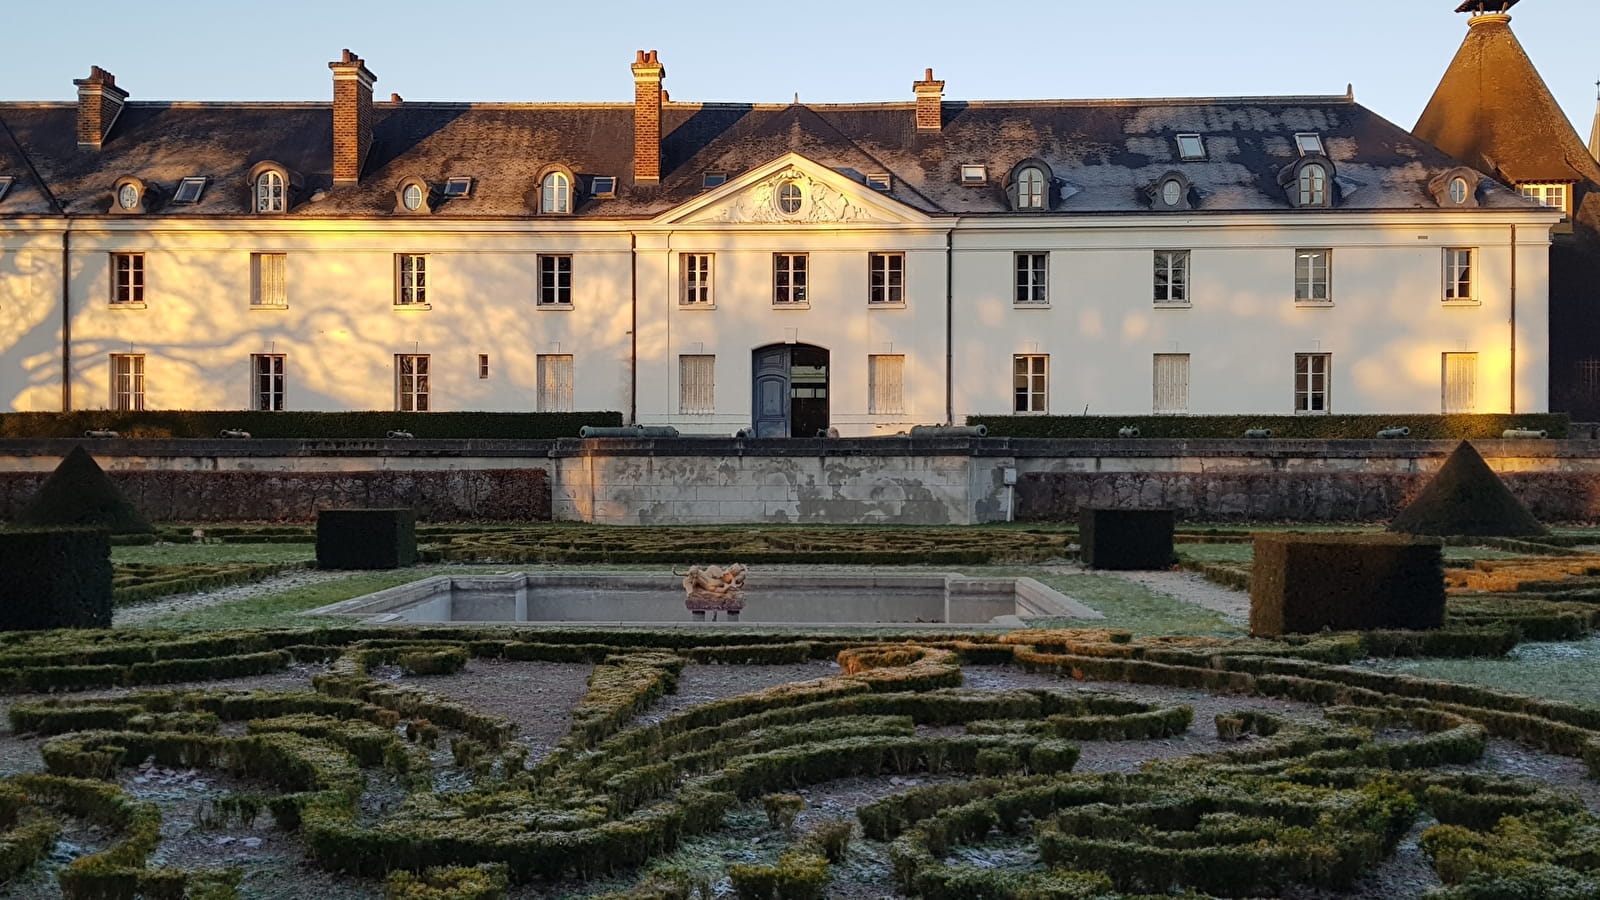 Visite guidée - Le château de la Verrerie 'Côté cour et côté jardin'